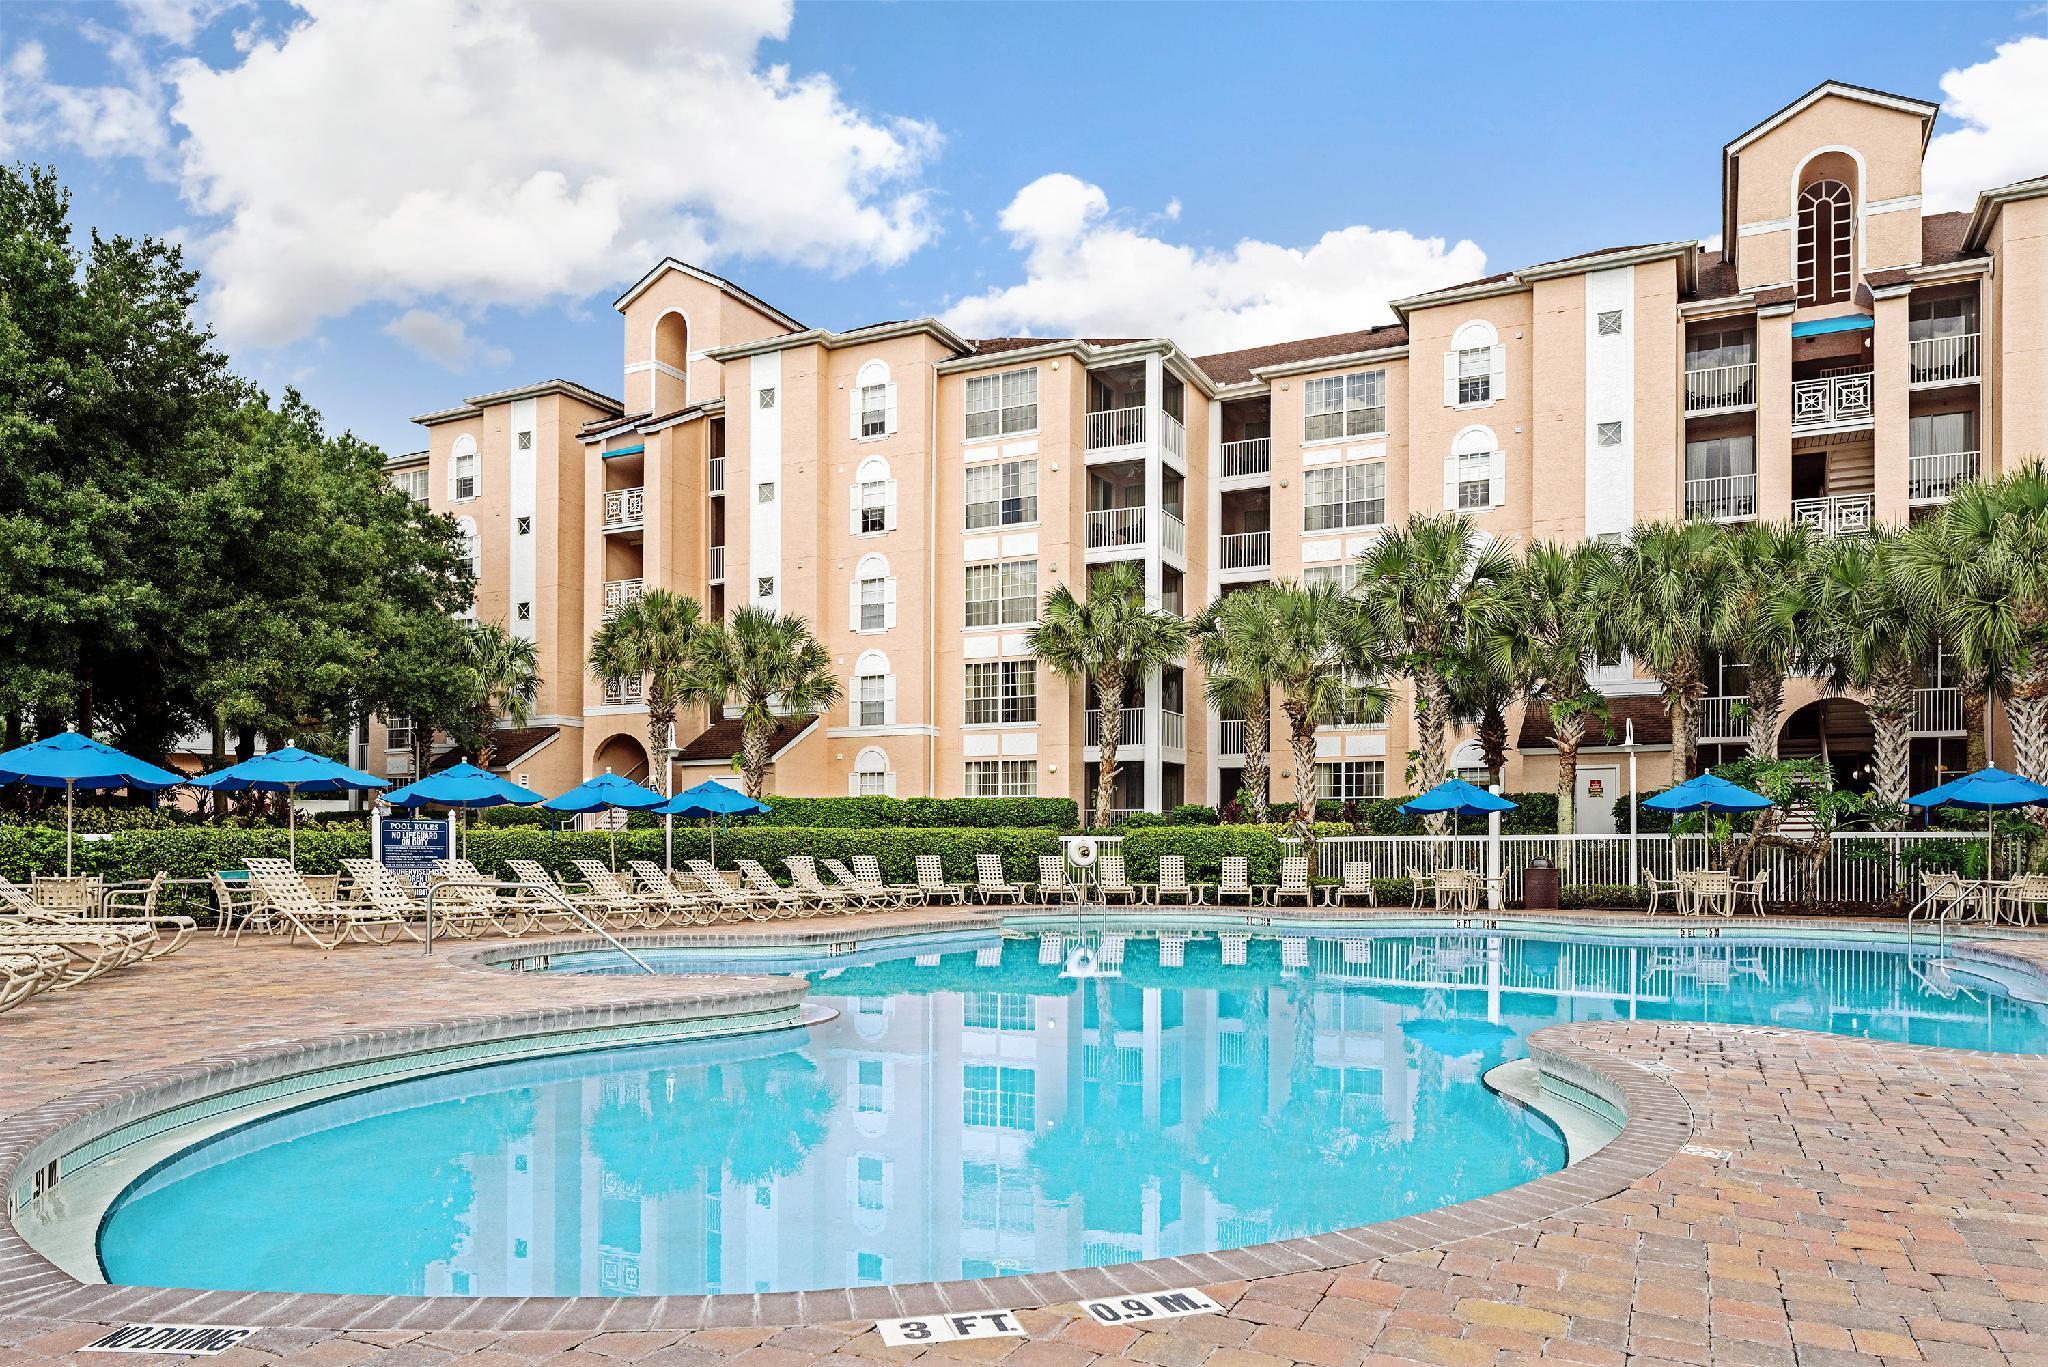 Hilton Vacation Club Grande Villas Orlando - Lake Buena Vista, FL